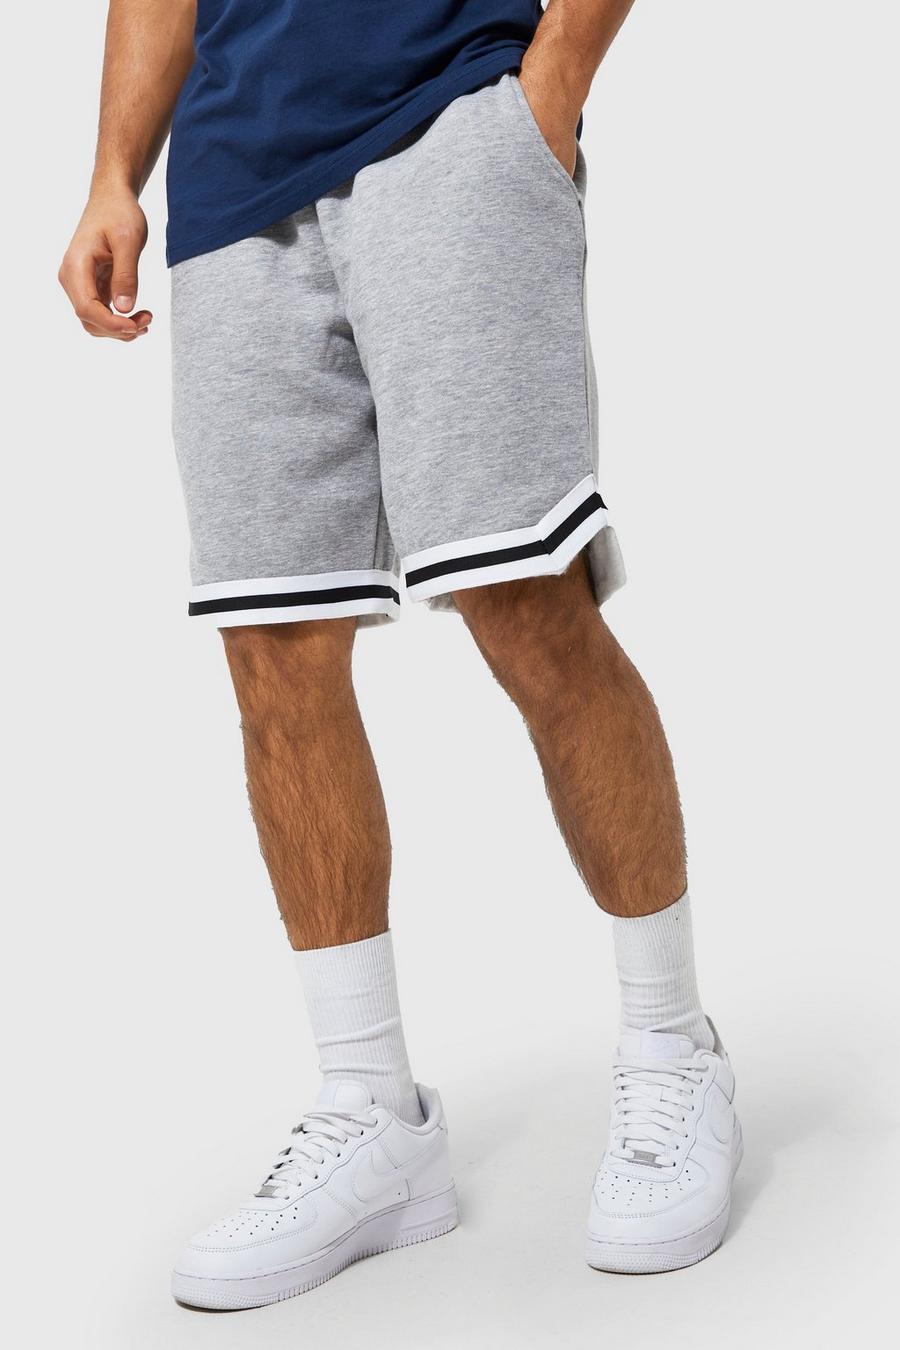 Lockere Shorts mit Streifen, Grey